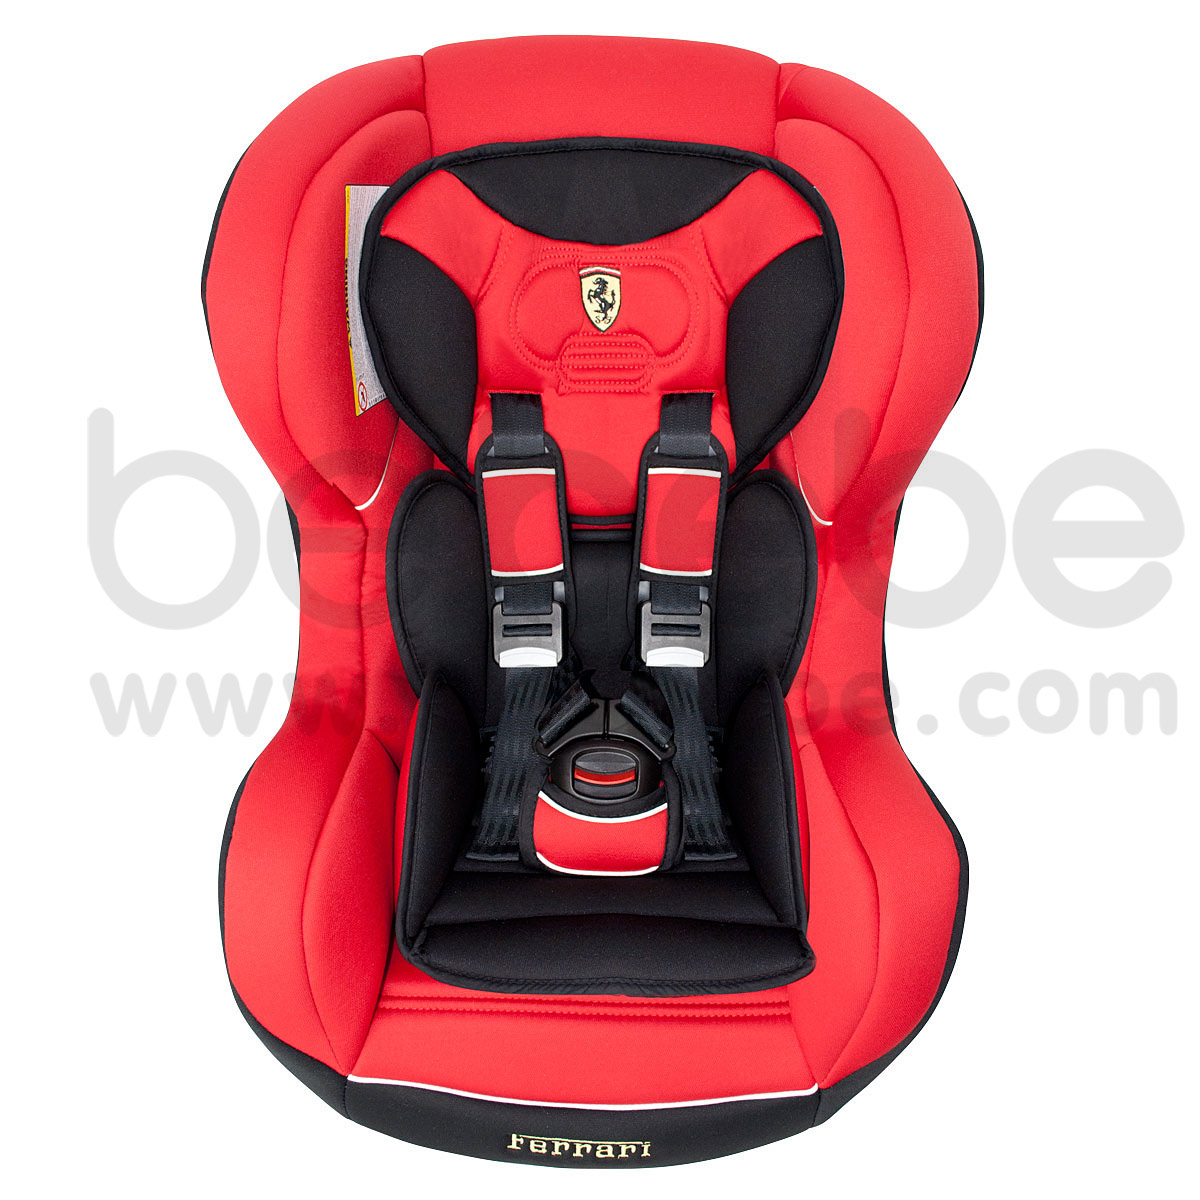 คาร์ซีท,เบาะนั่งนิรภัย Ferrari:Carseat CosmoSP (Red)